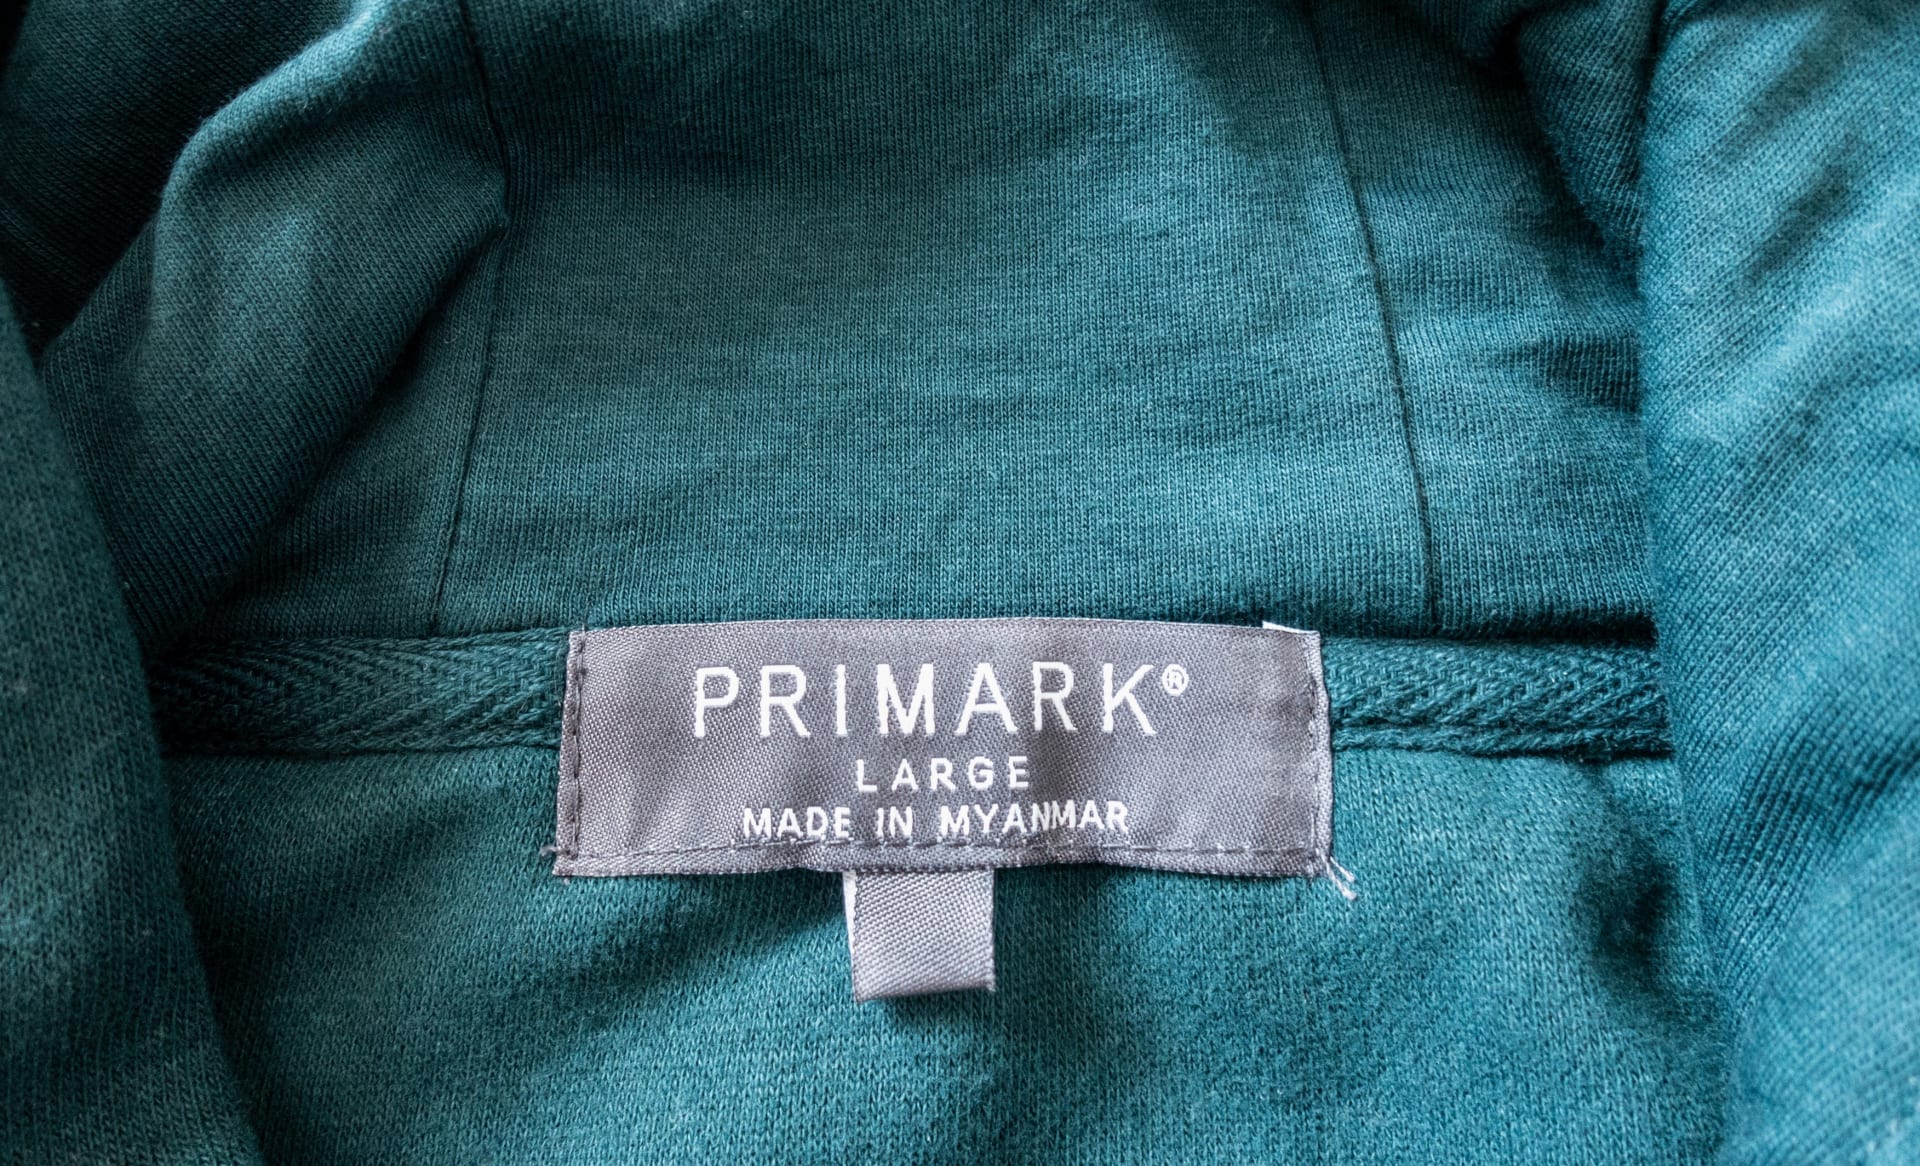 Zaměstnance myanmarské továrny, která dodává oděvy pro Primark, zamkli uvnitř budovy jejich nadřízení.